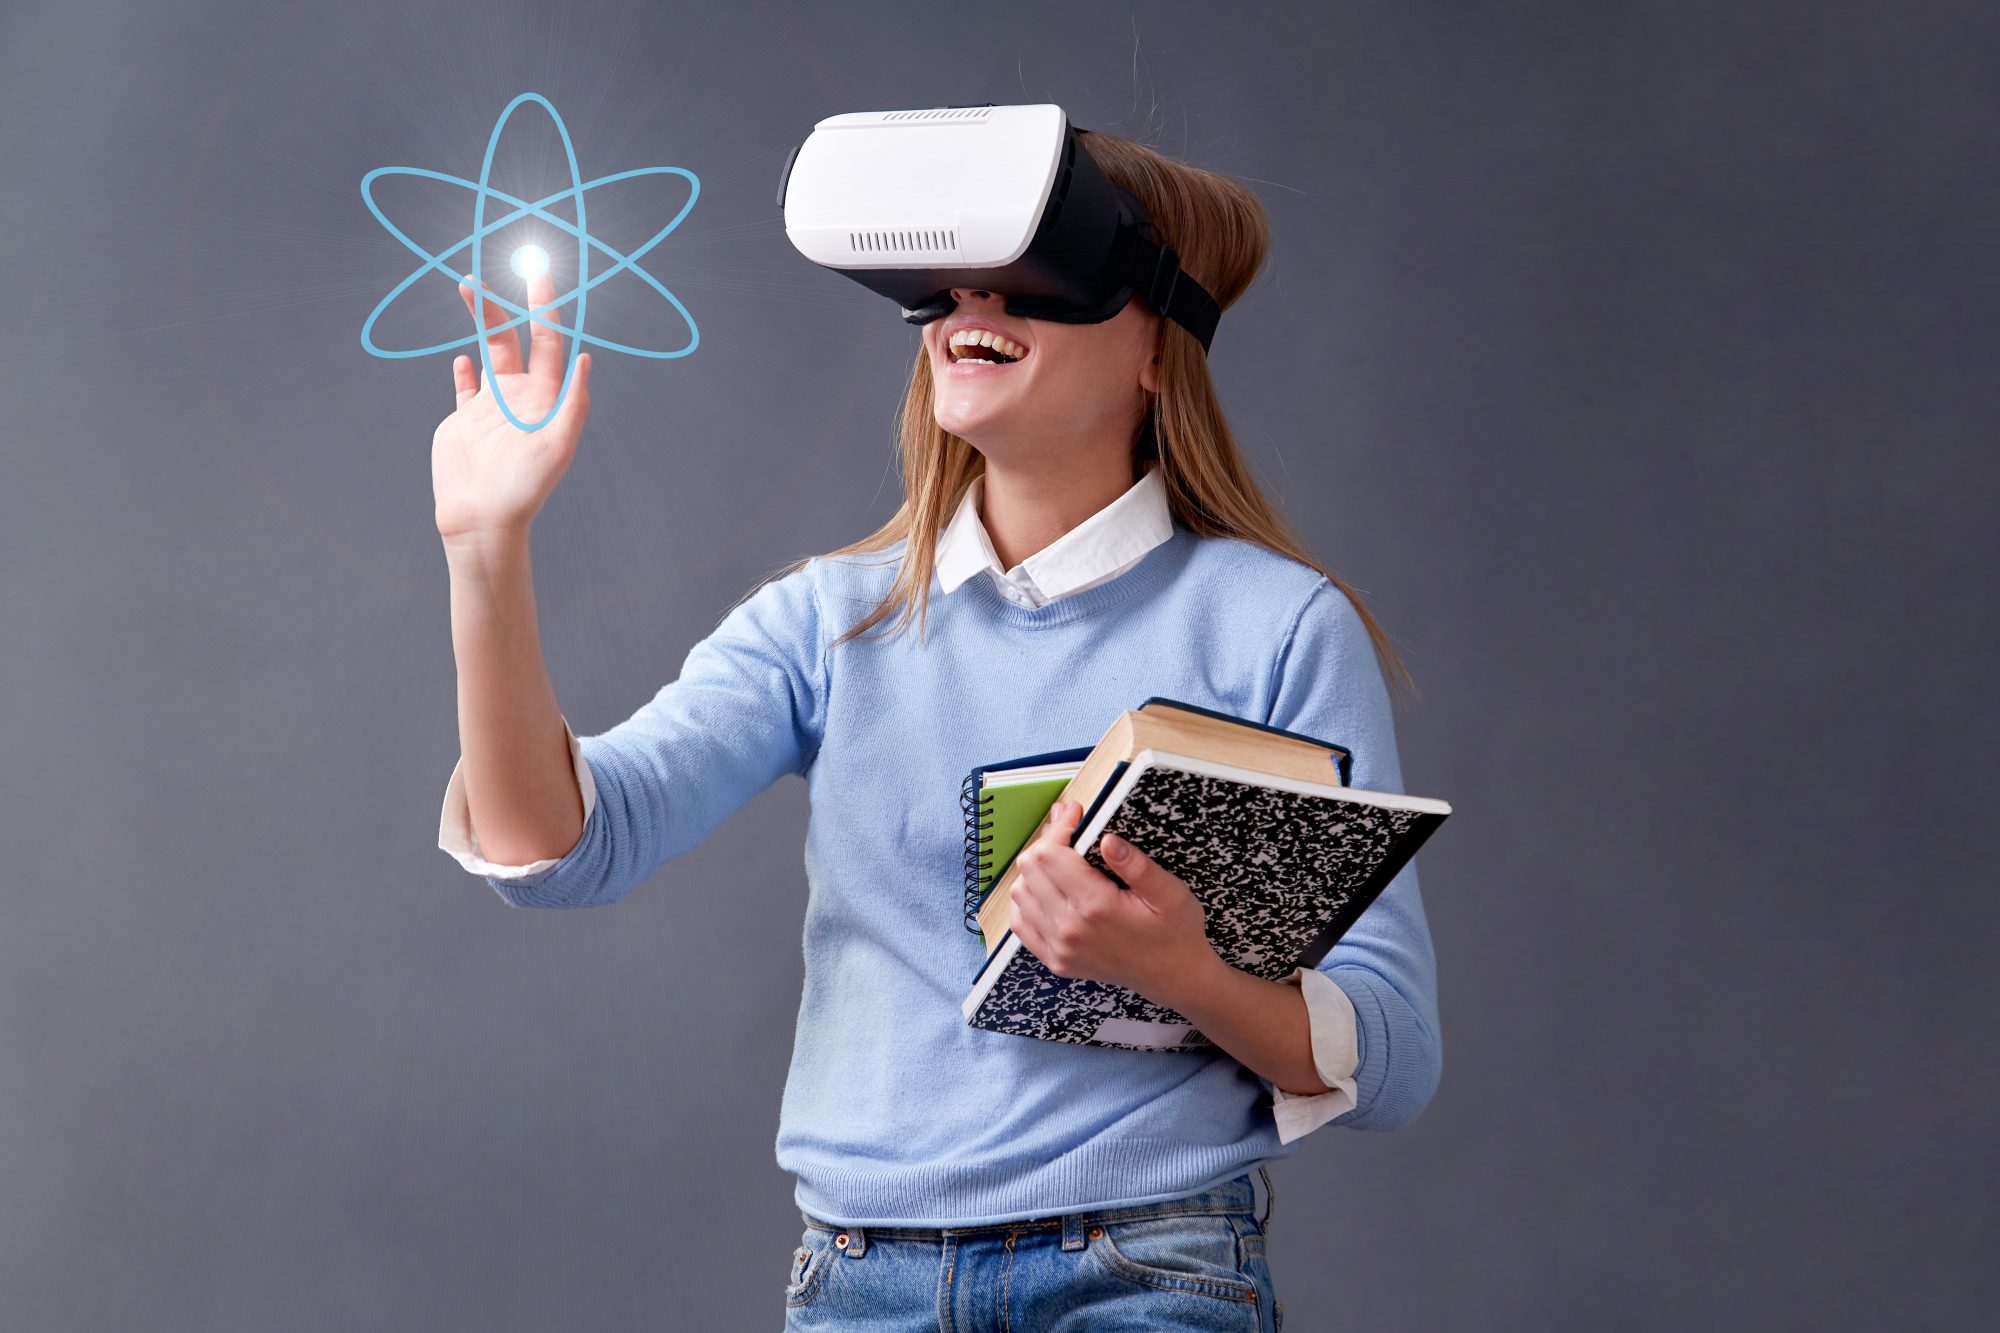 Школа vr. Виртуальная реальность в учебе. Технологии виртуальной реальности в образовании. Виртуальные очки в образовании. Очки виртуальной реальности в школе.